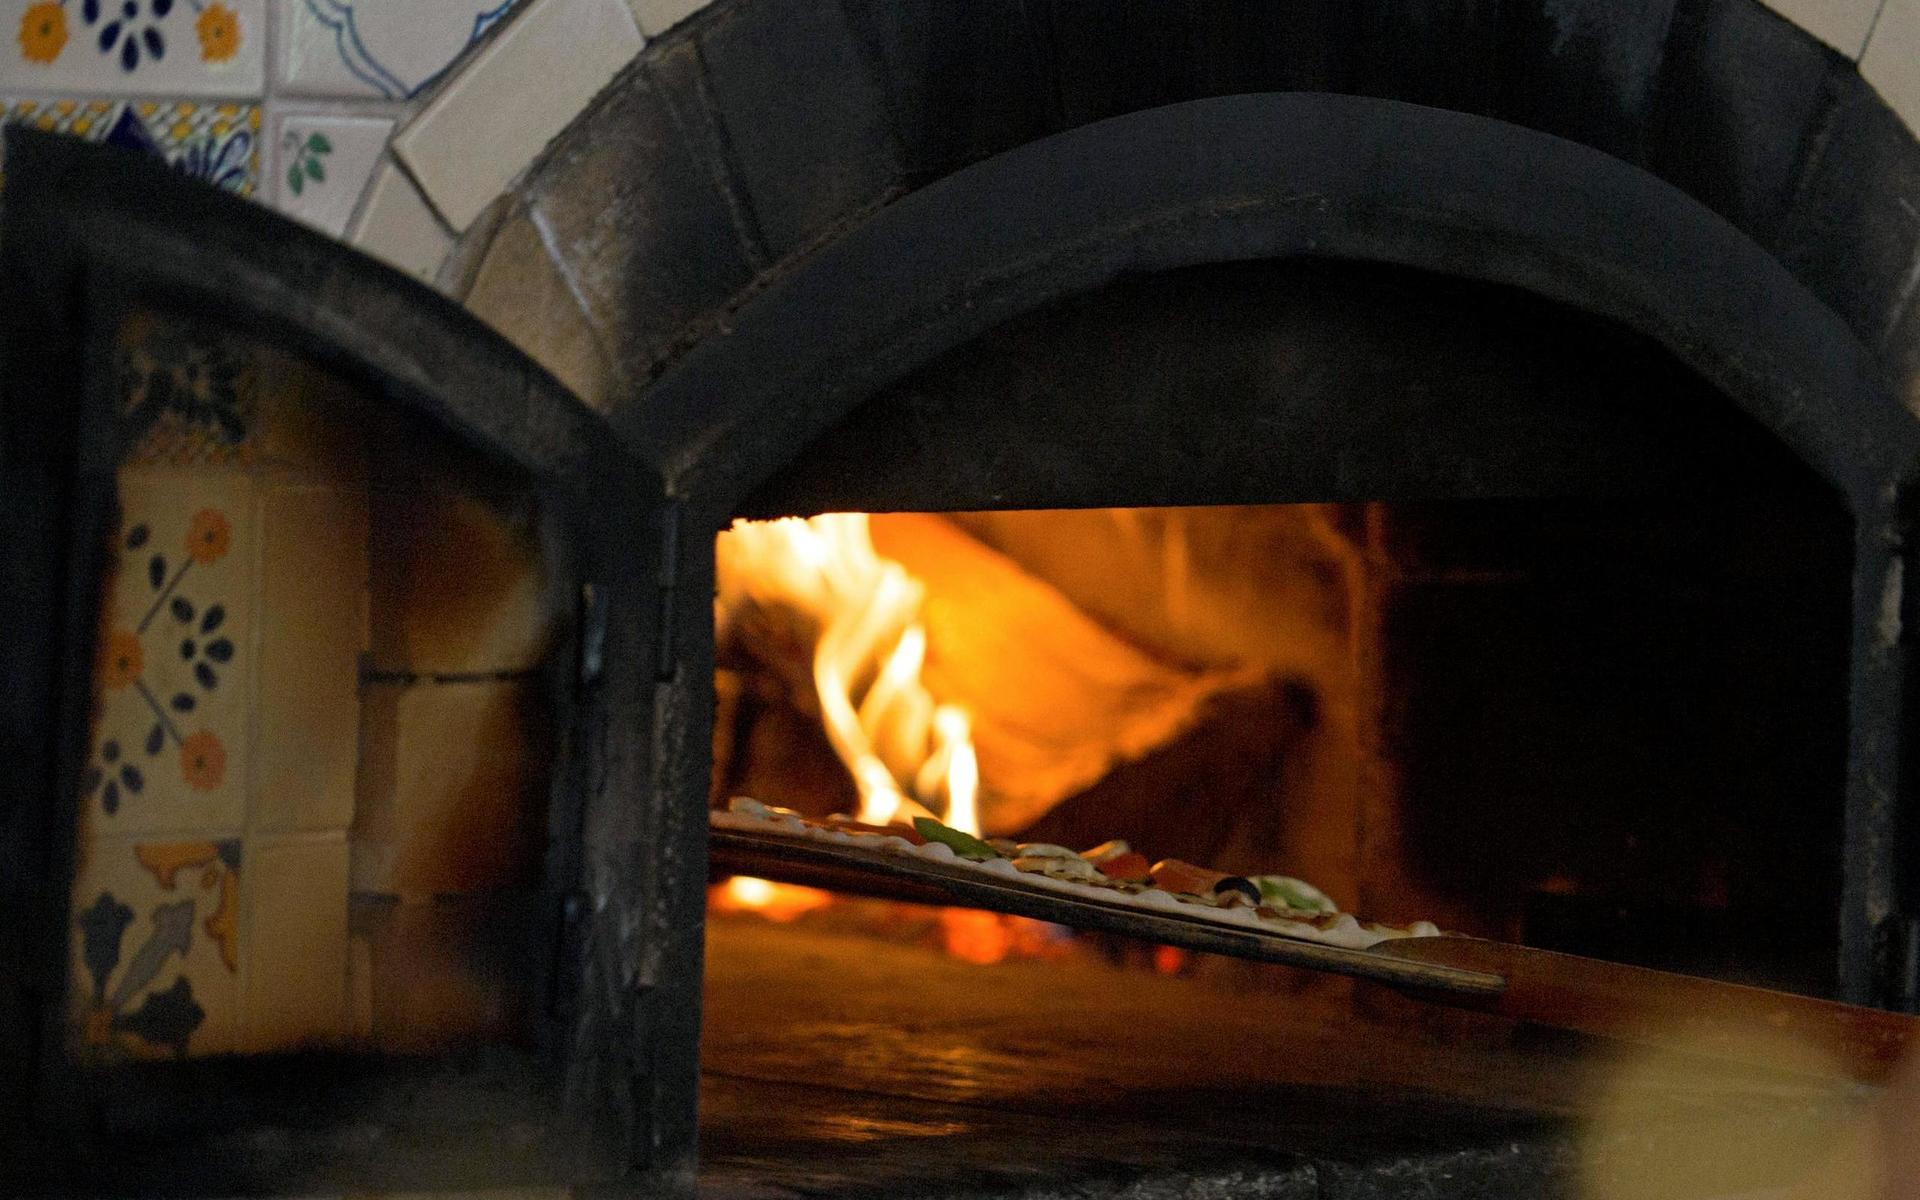 På pizzarestaurangen Cyranos har man redan öppnat sin uteservering. ”Toppen”, säger restaurangchef Neli Yalmaz.